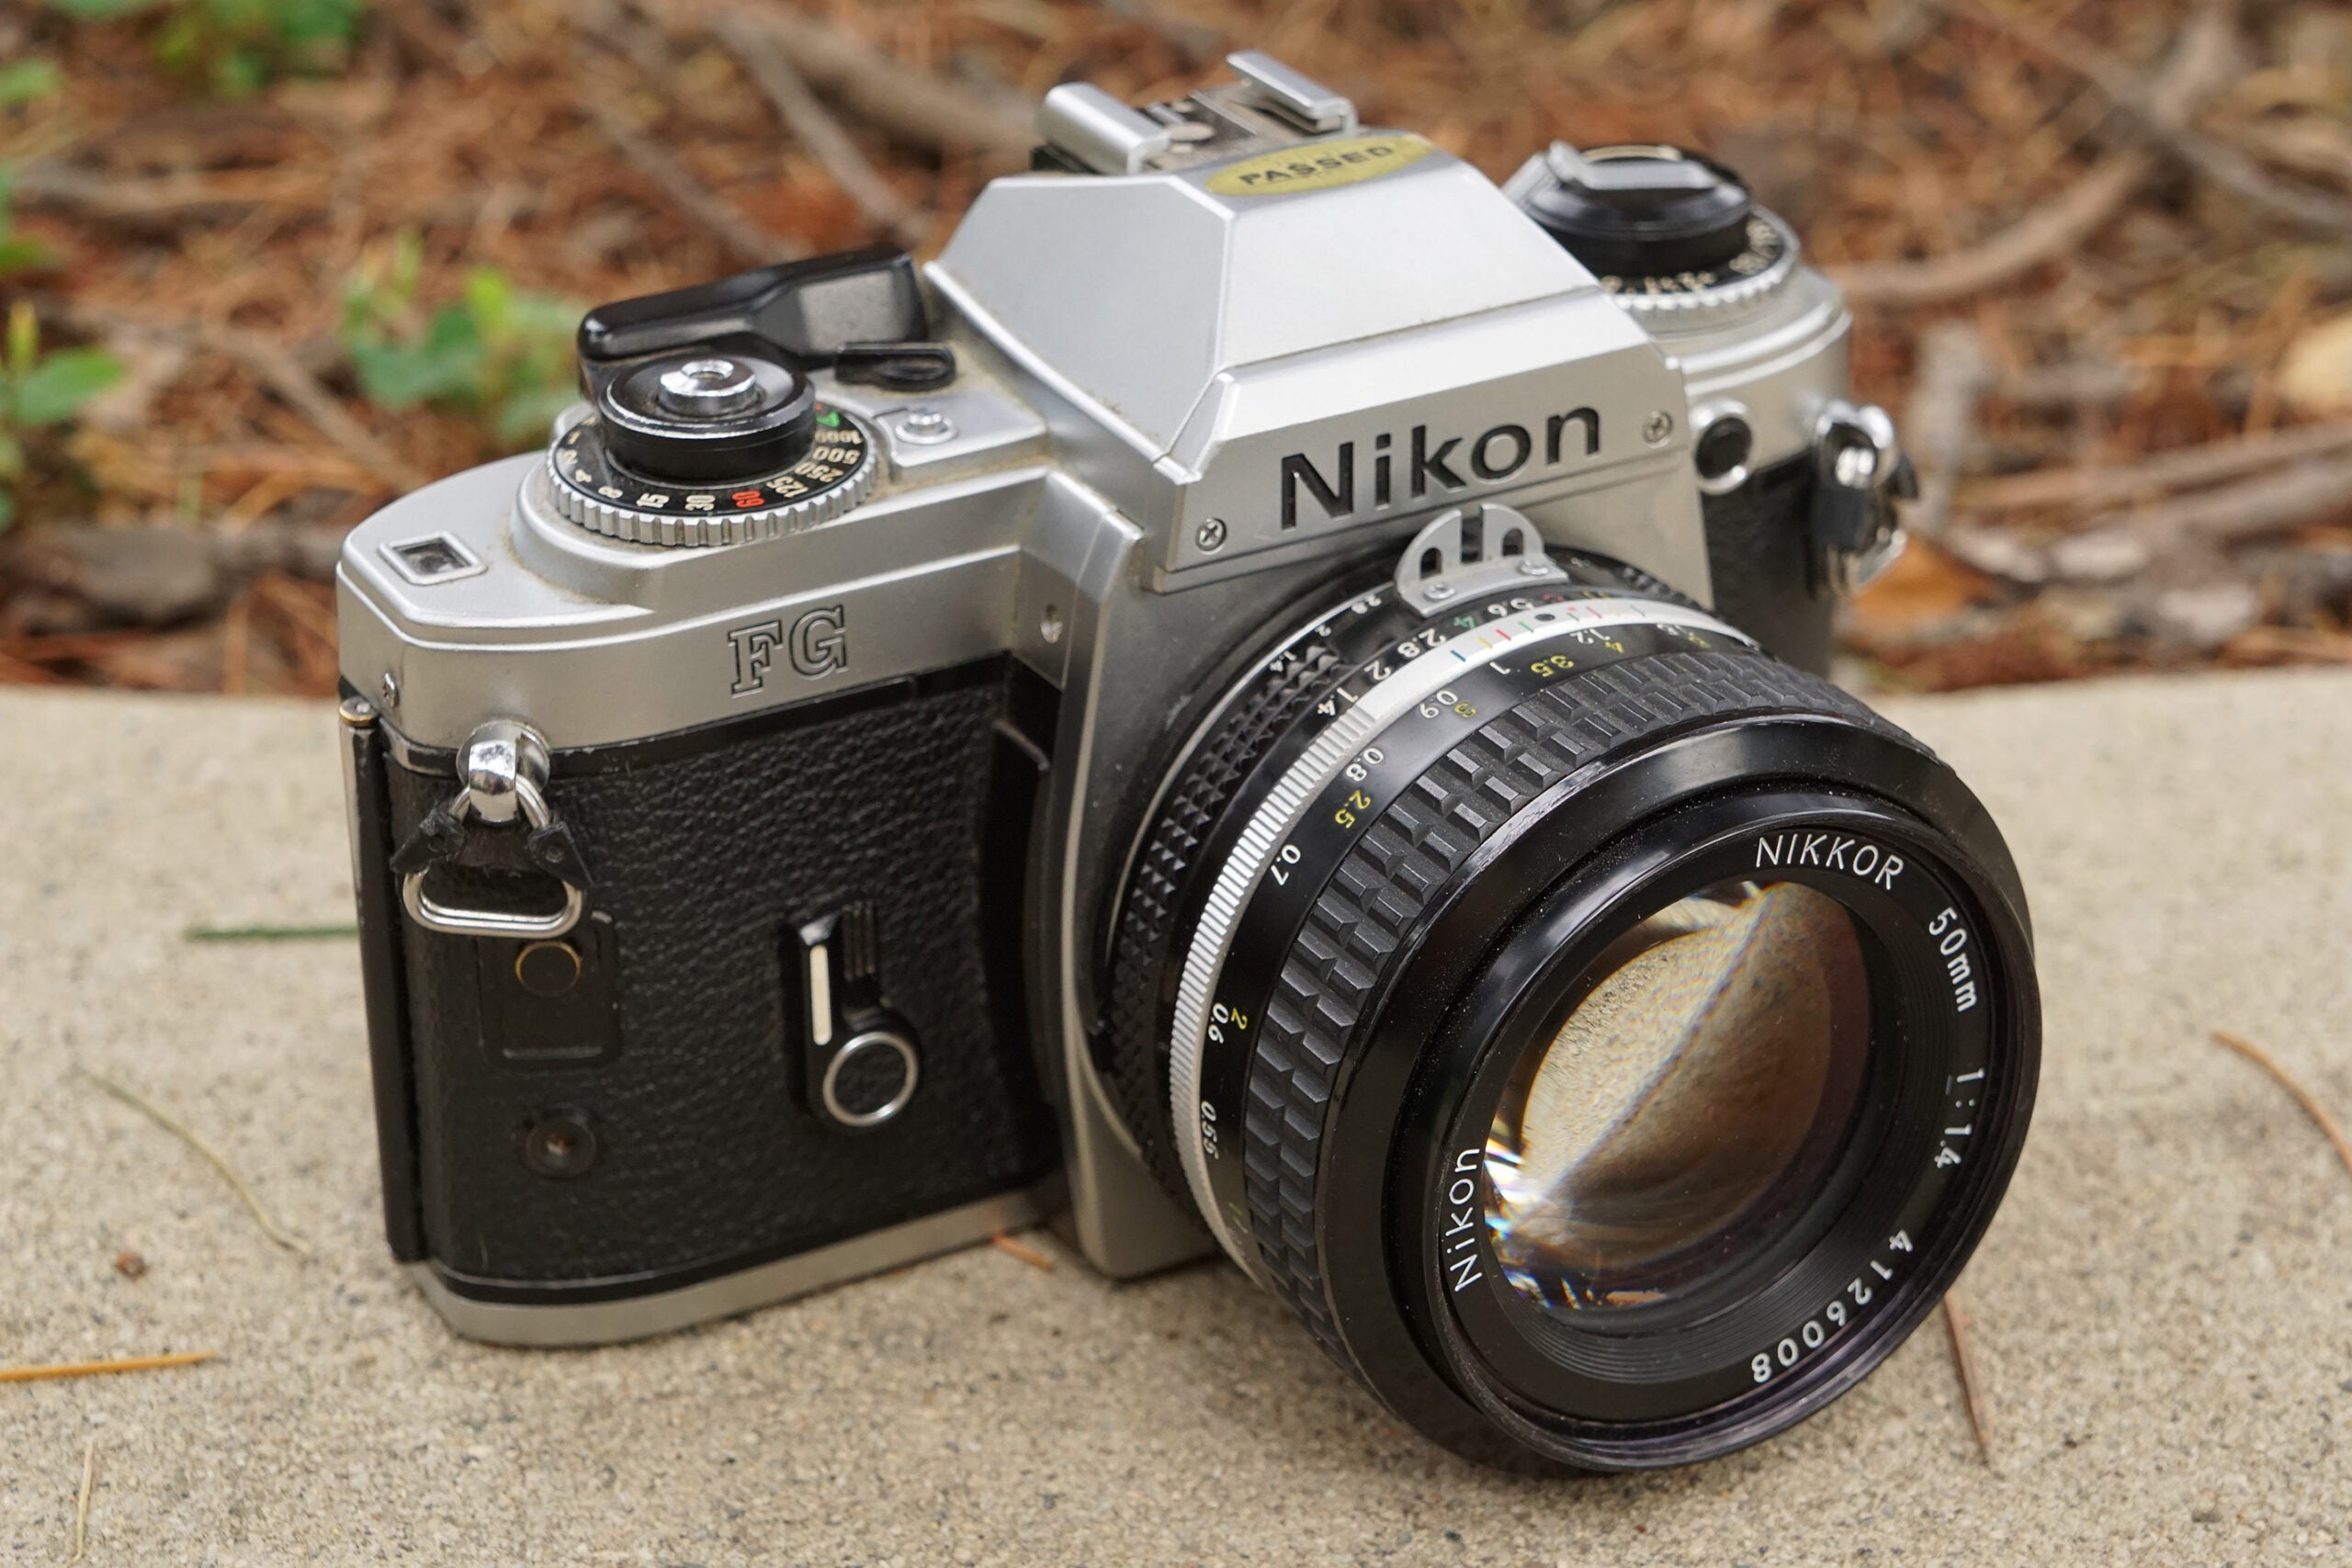 A Nikon FG 35mm film camera sitting on a ledge.